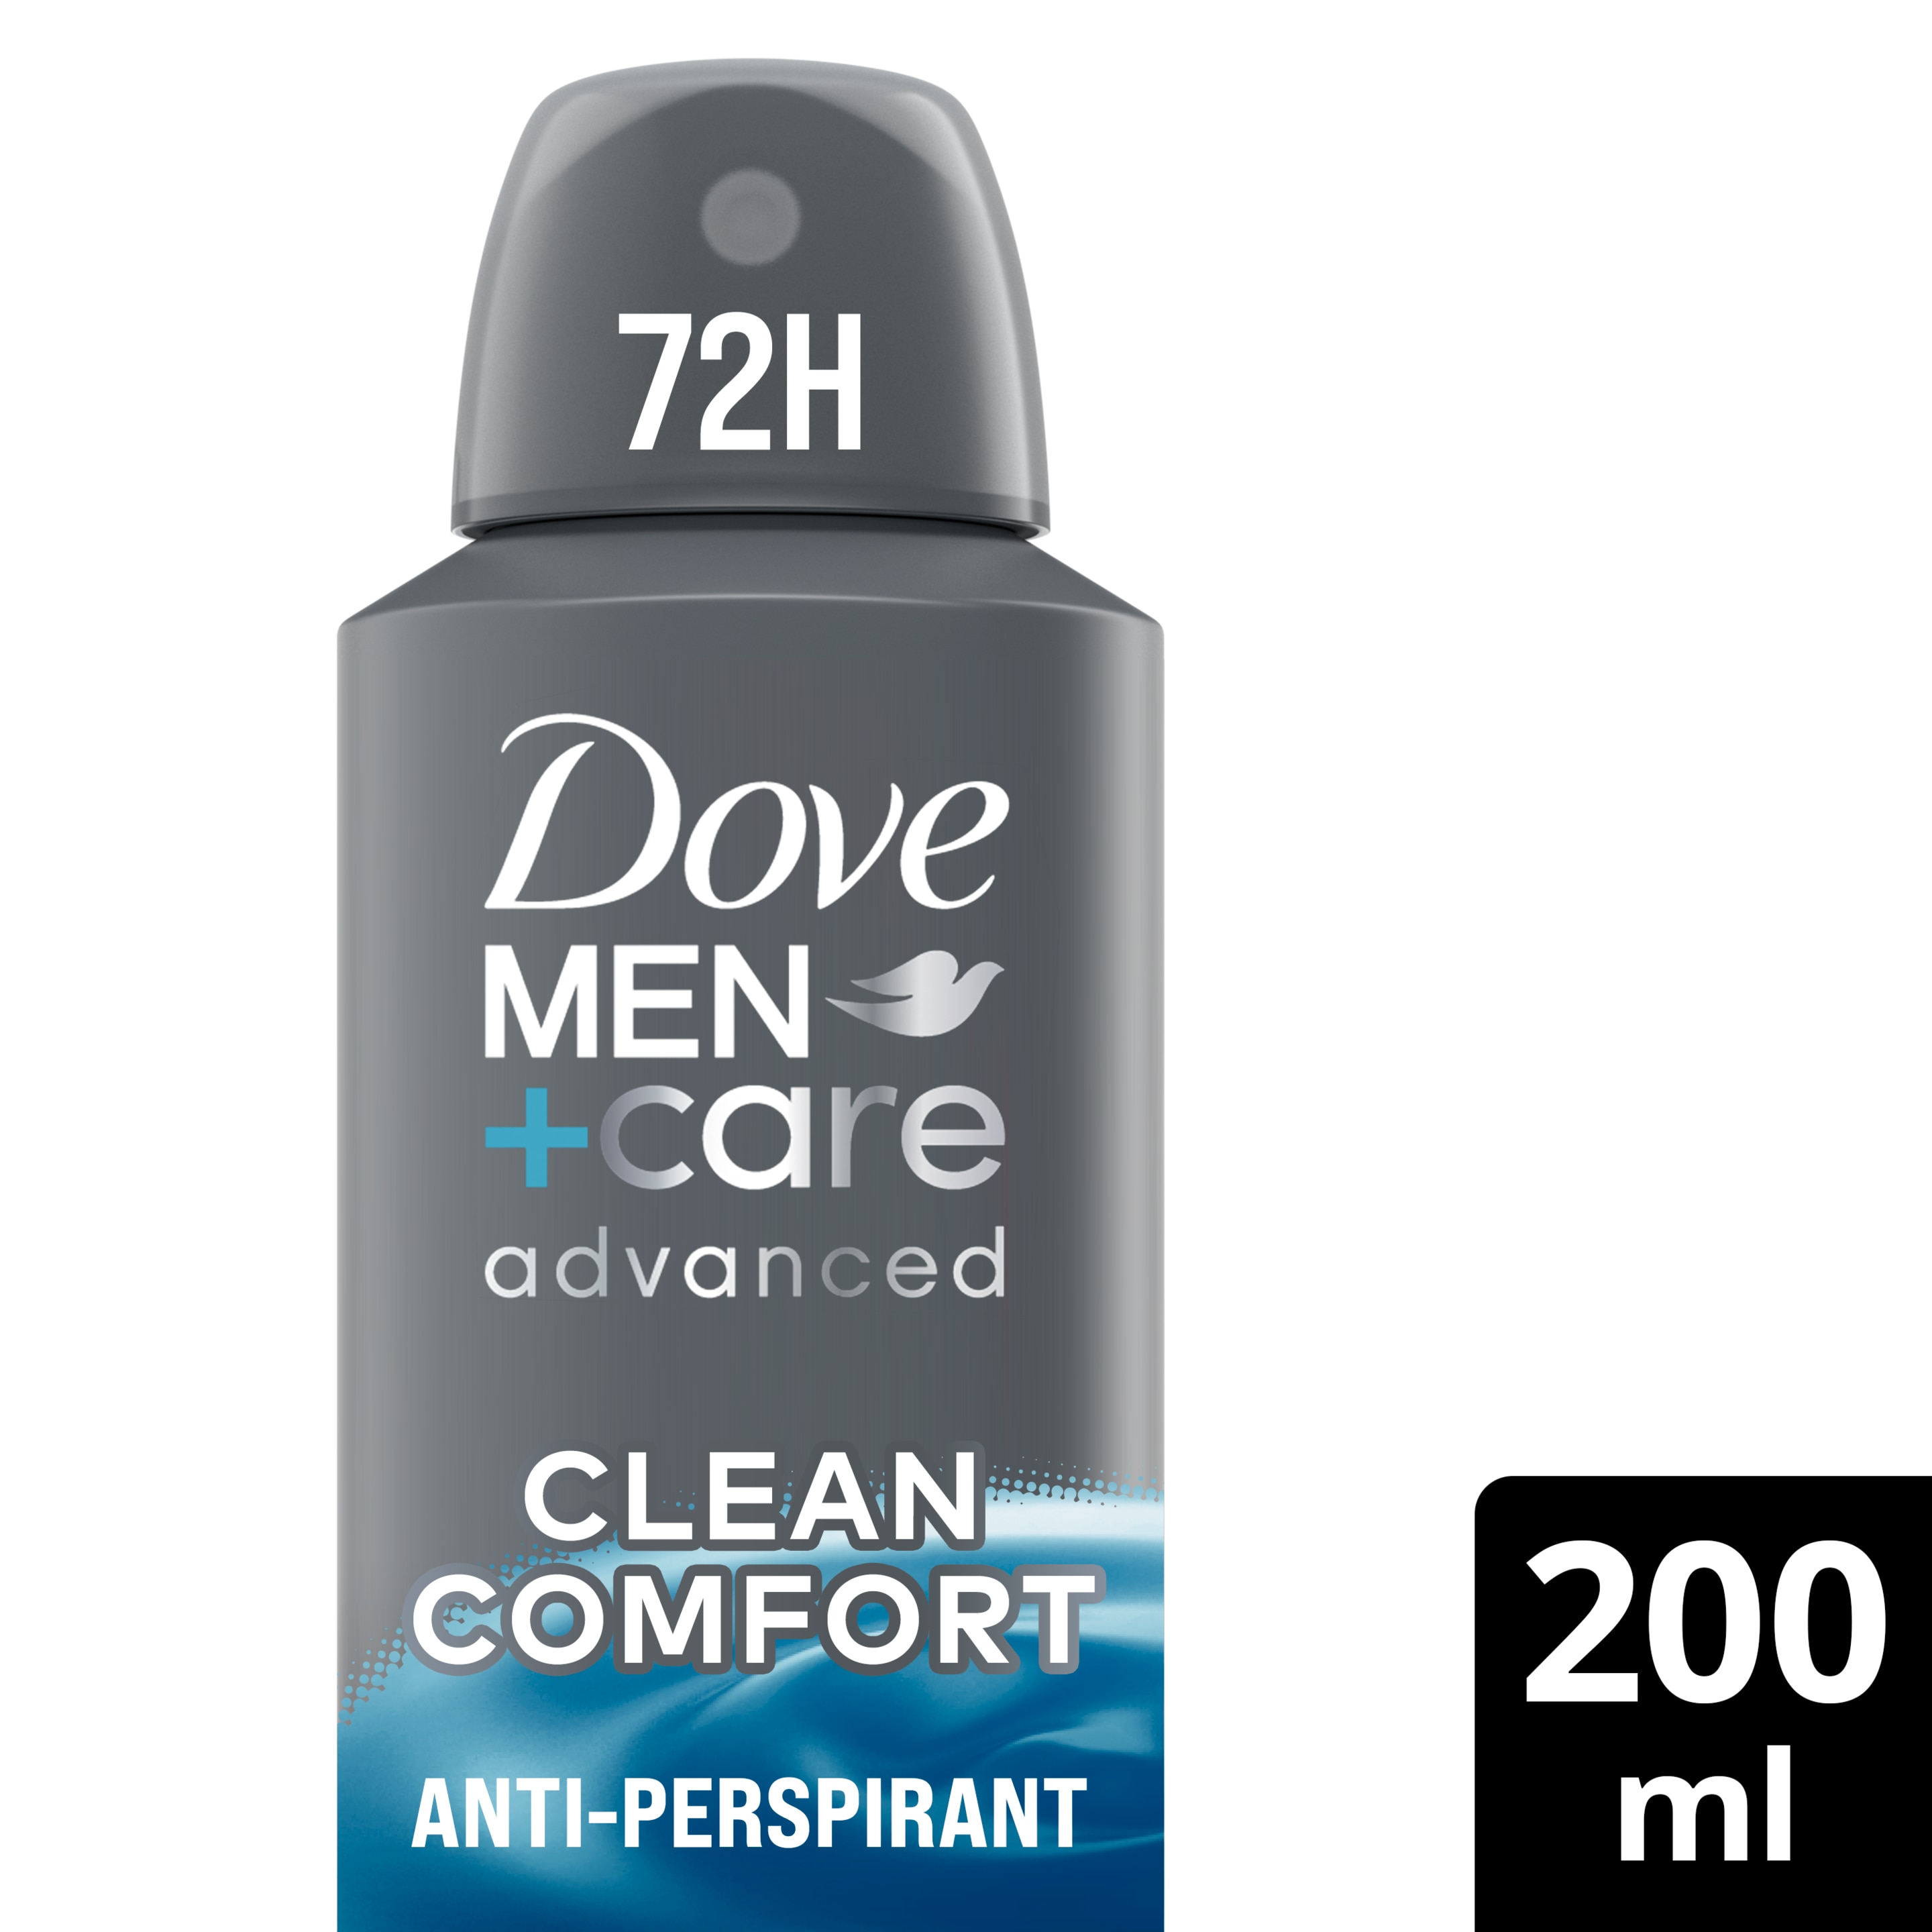 Men+Care Advanced Clean Comfort Antiperspirant Deodorant Aerosol